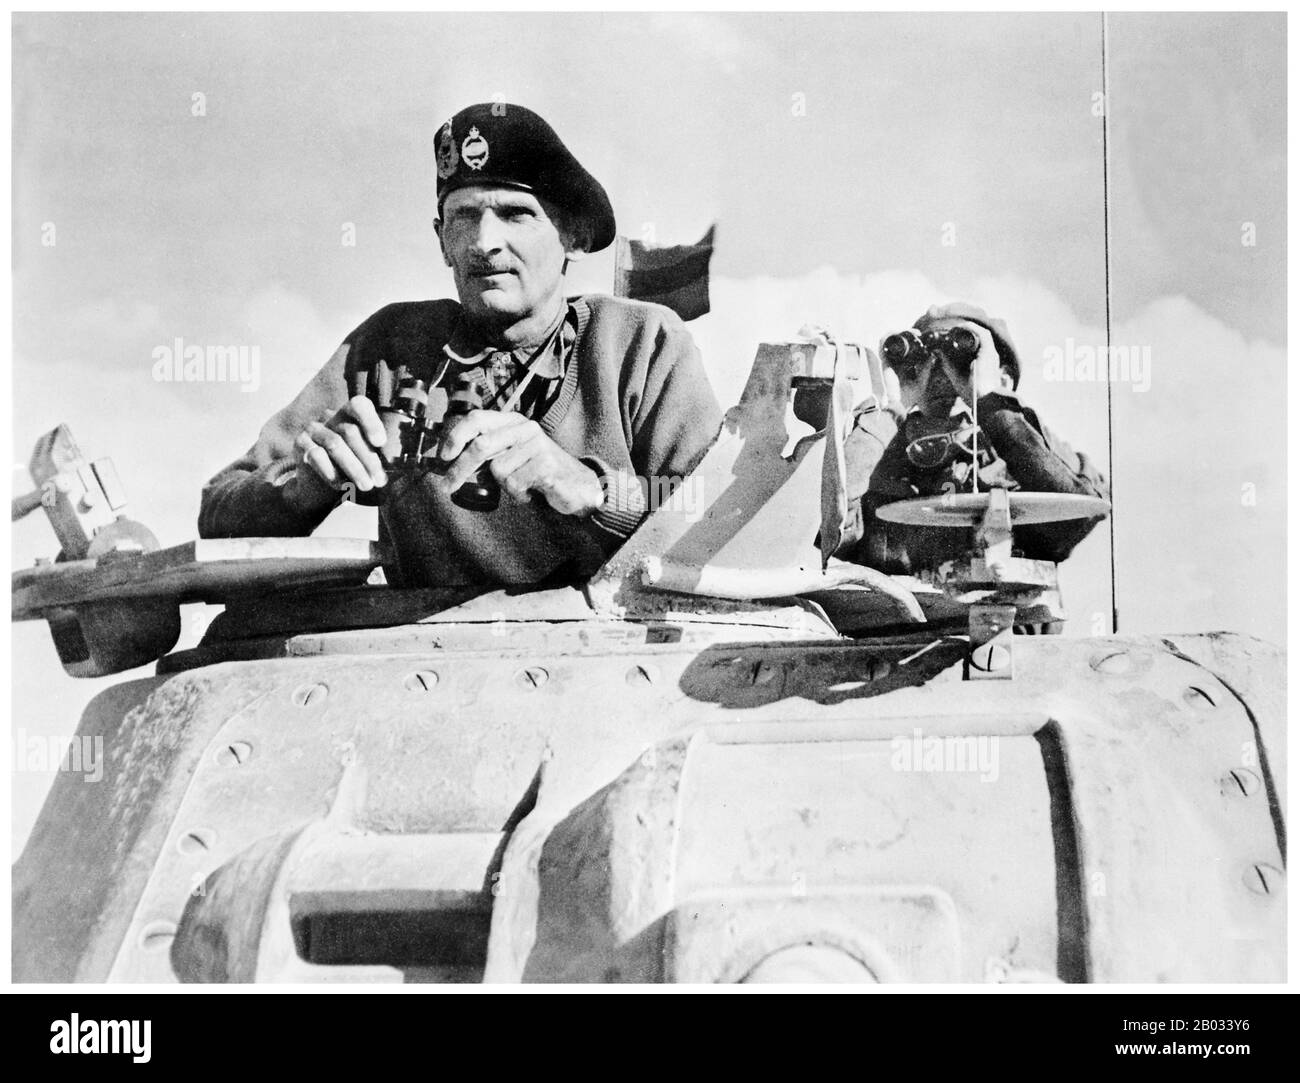 Die Zweite Schlacht von El Alamein (23. Oktober bis 11. November 1942) war eine große Schlacht des Zweiten Weltkriegs, die in der Nähe des ägyptischen Bahnhalters El Alamein stattfand. Mit den Alliierten als Sieger markierte sie einen wichtigen Wendepunkt in der Kampagne der westlichen Wüste des Zweiten Weltkriegs. Feldmarschall Bernard Law Montgomery, 1st Viscount Montgomery of Alamein, KG, GCB, DSO, PC (17. November 1887 - 24. März 1976), Spitzname 'Monty' und 'Sparan General', war ein leitender Offizier der britischen Armee und Sieger bei El-Alamein. Stockfoto